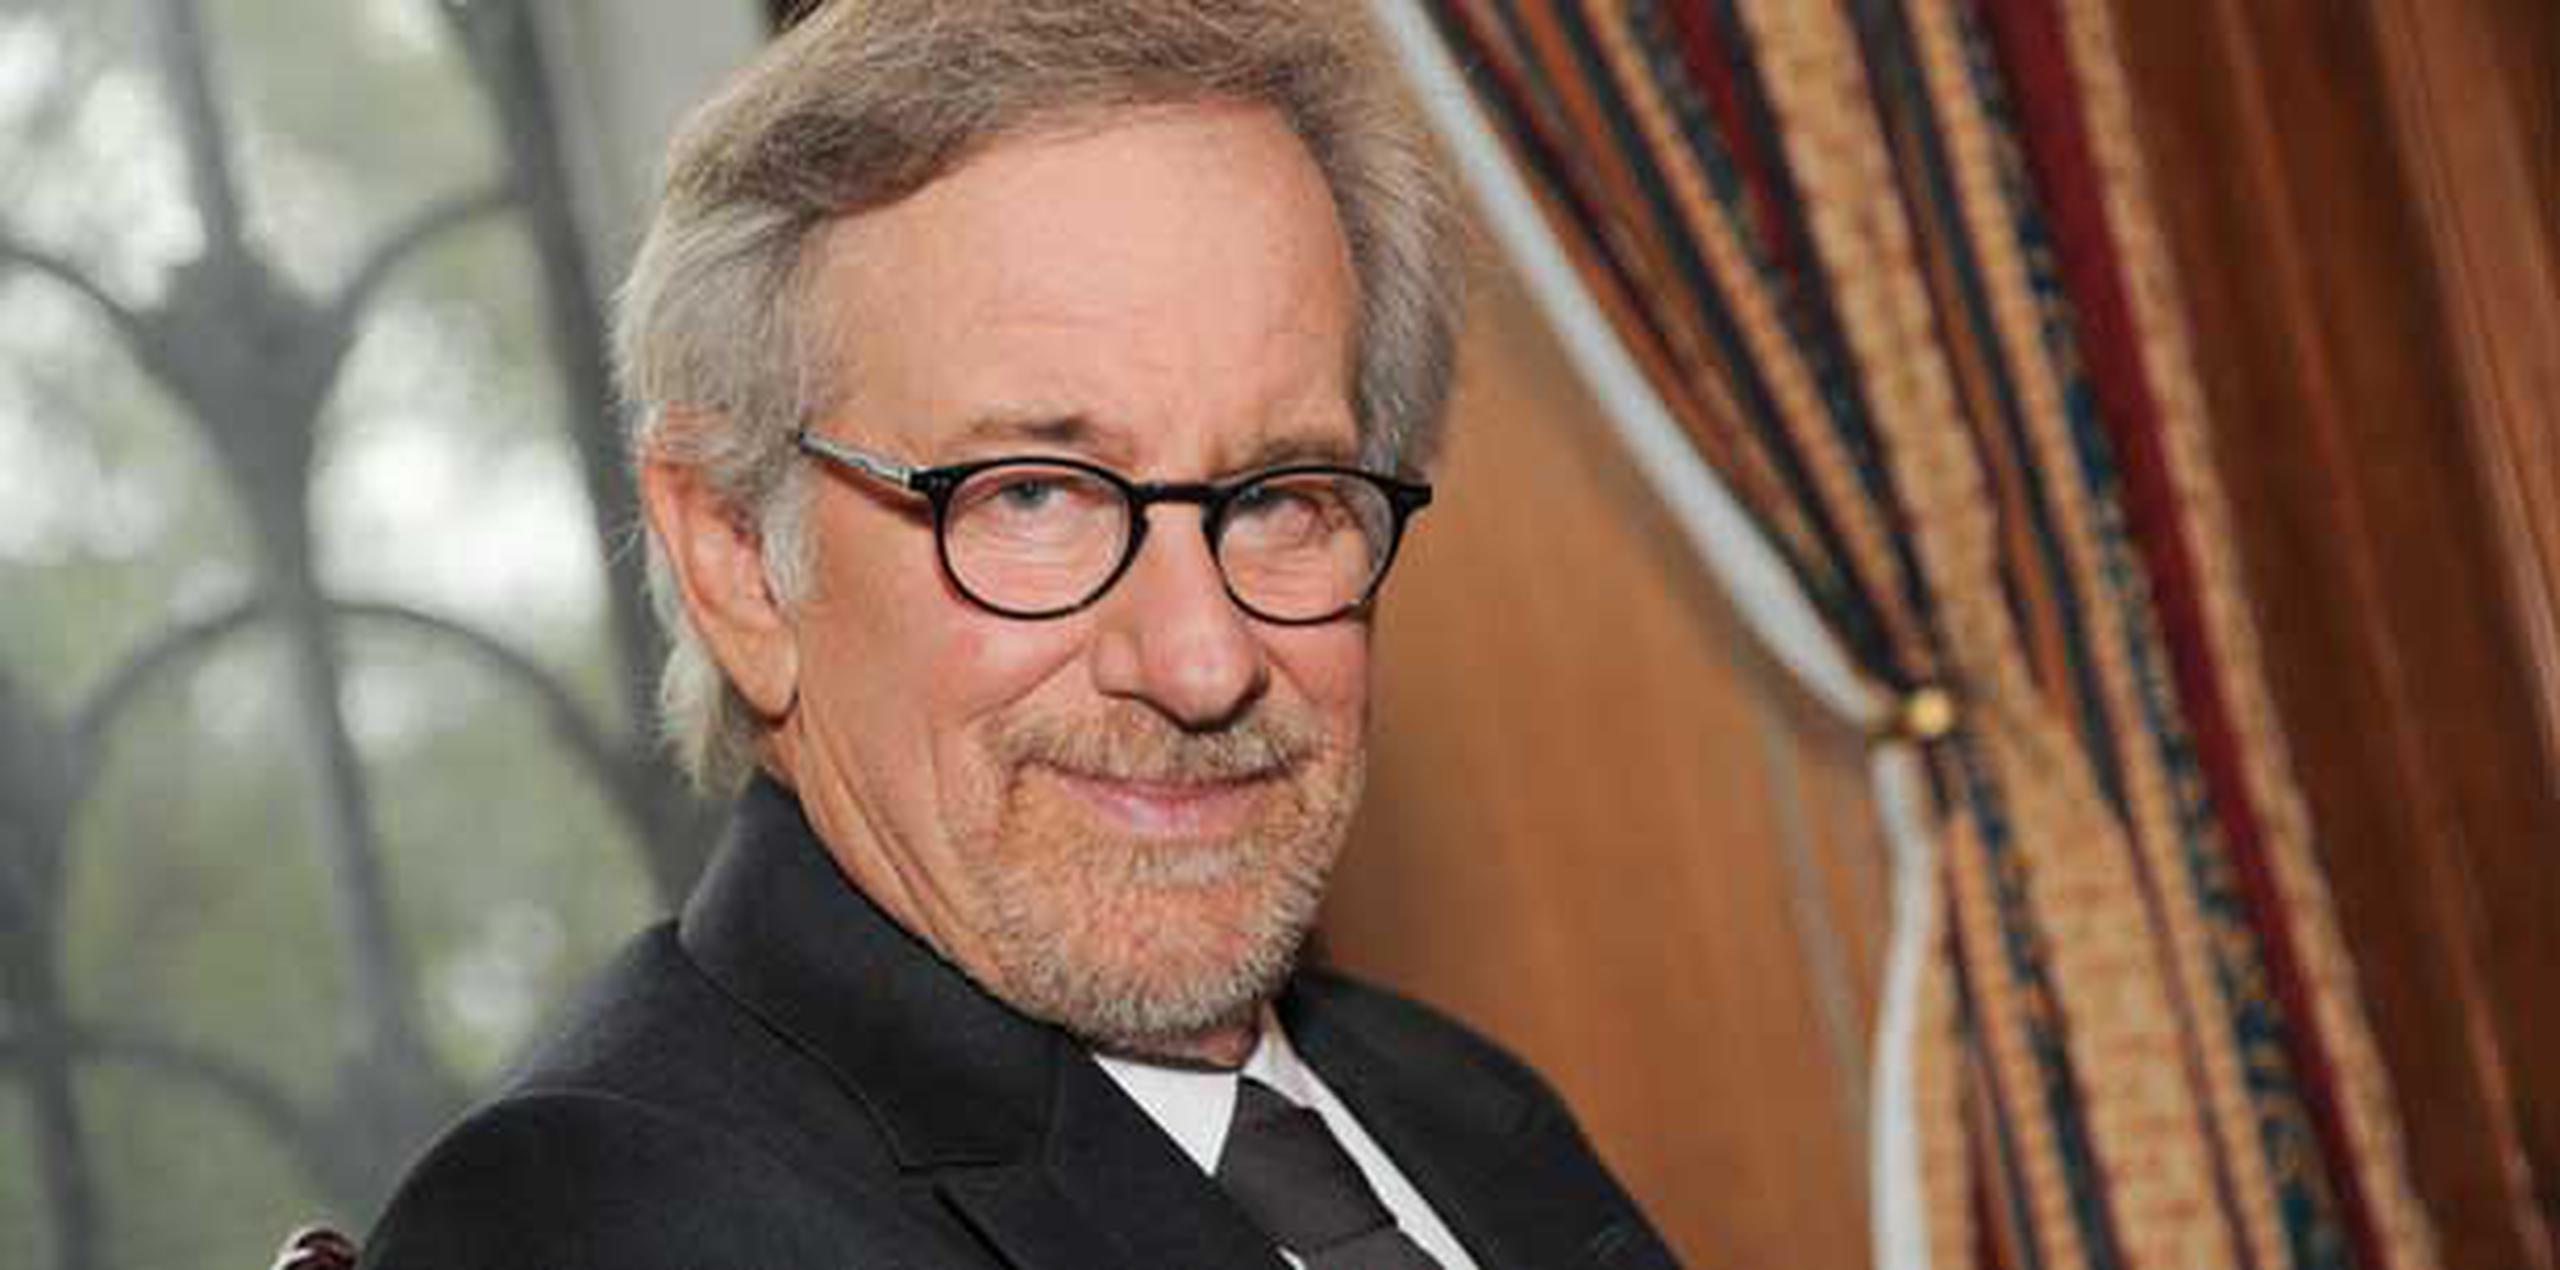 Steven Spielberg no es el único director de cine que está en la lista celebridades infliyentes. (Evan Agostini/Archivo/Invision/AP)